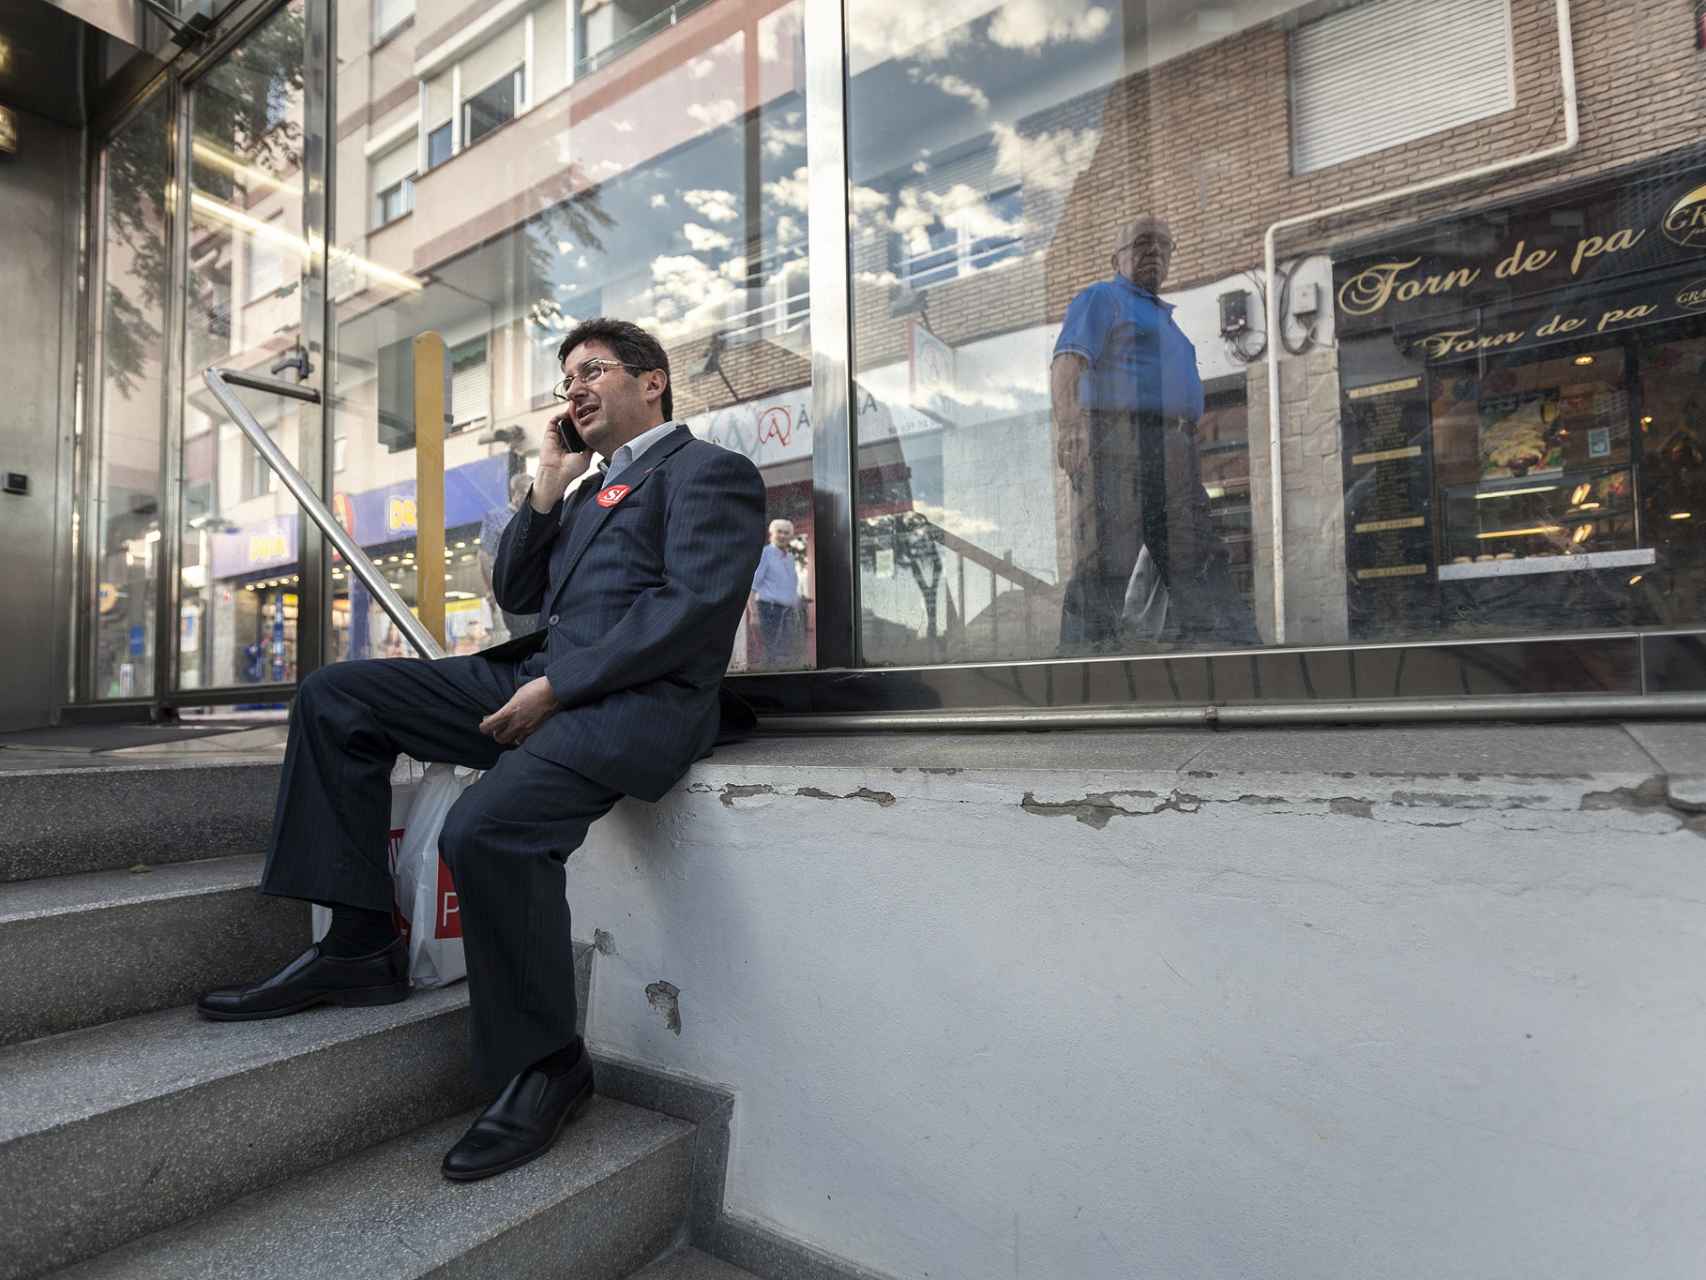 El candidato, descansando en la boca de una parada de Metro en Barcelona.